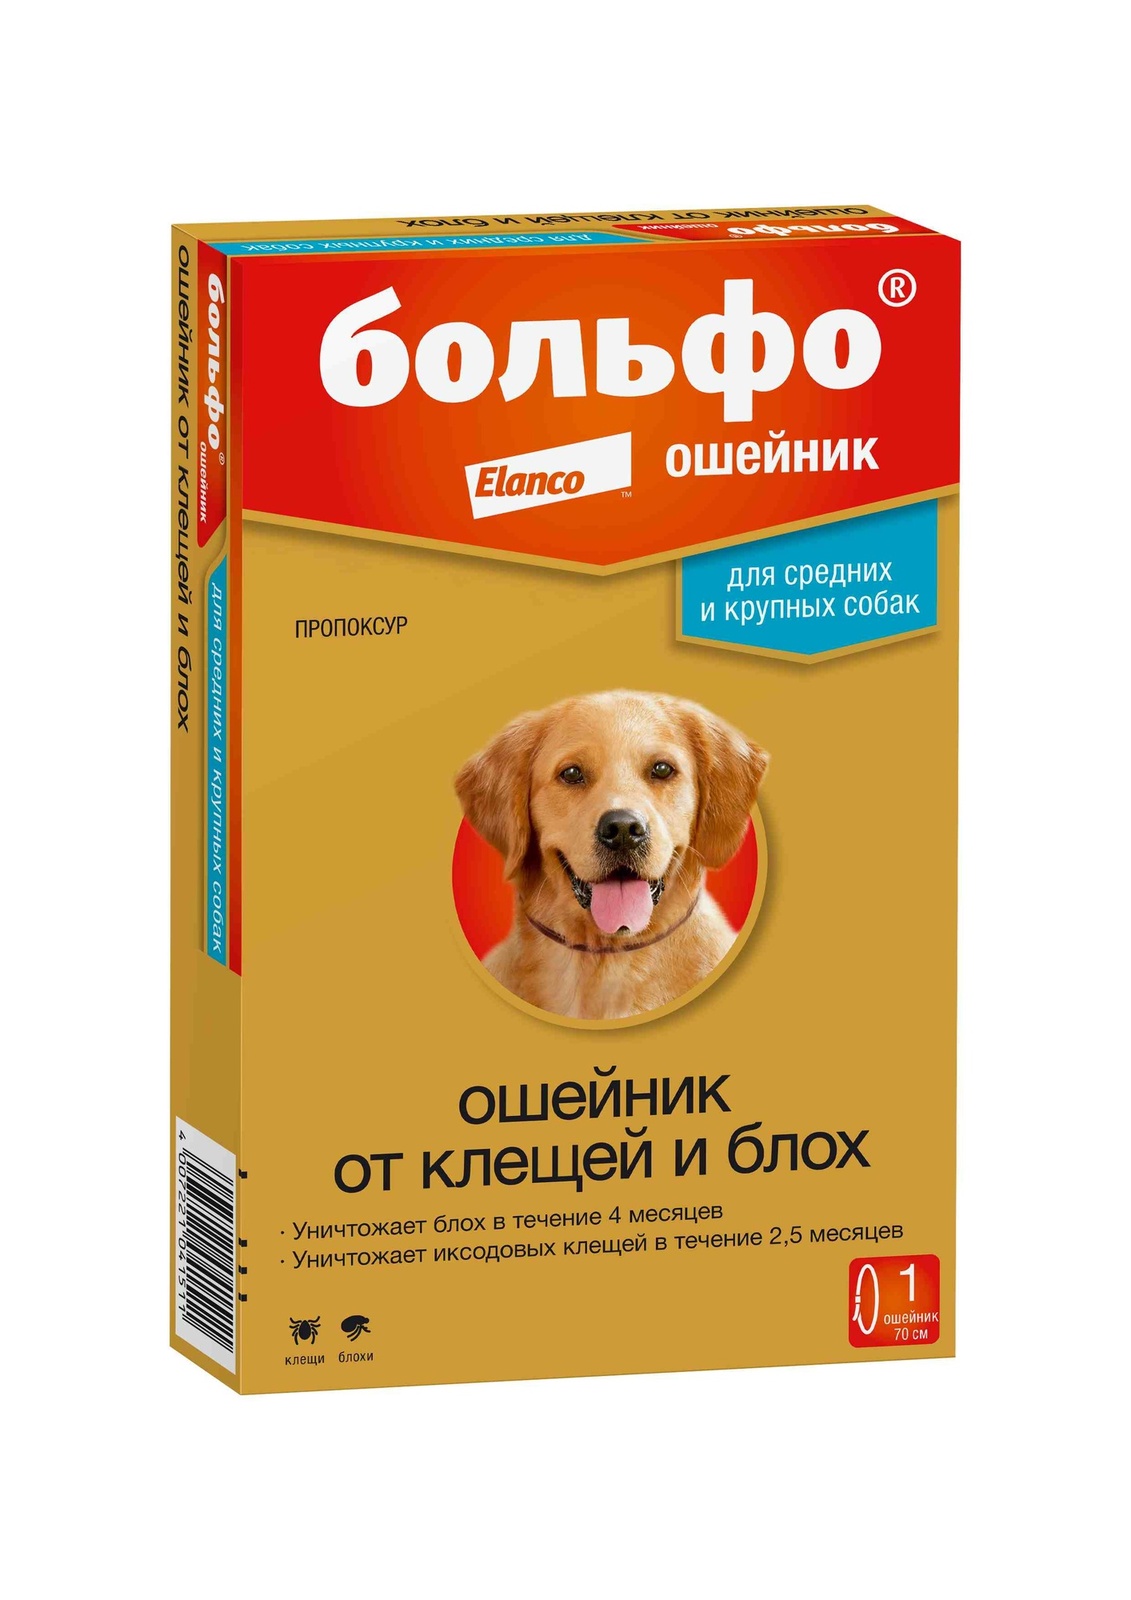 Elanco ошейник Больфо® от блох и клещей для собак средних и крупных пород (10 г)